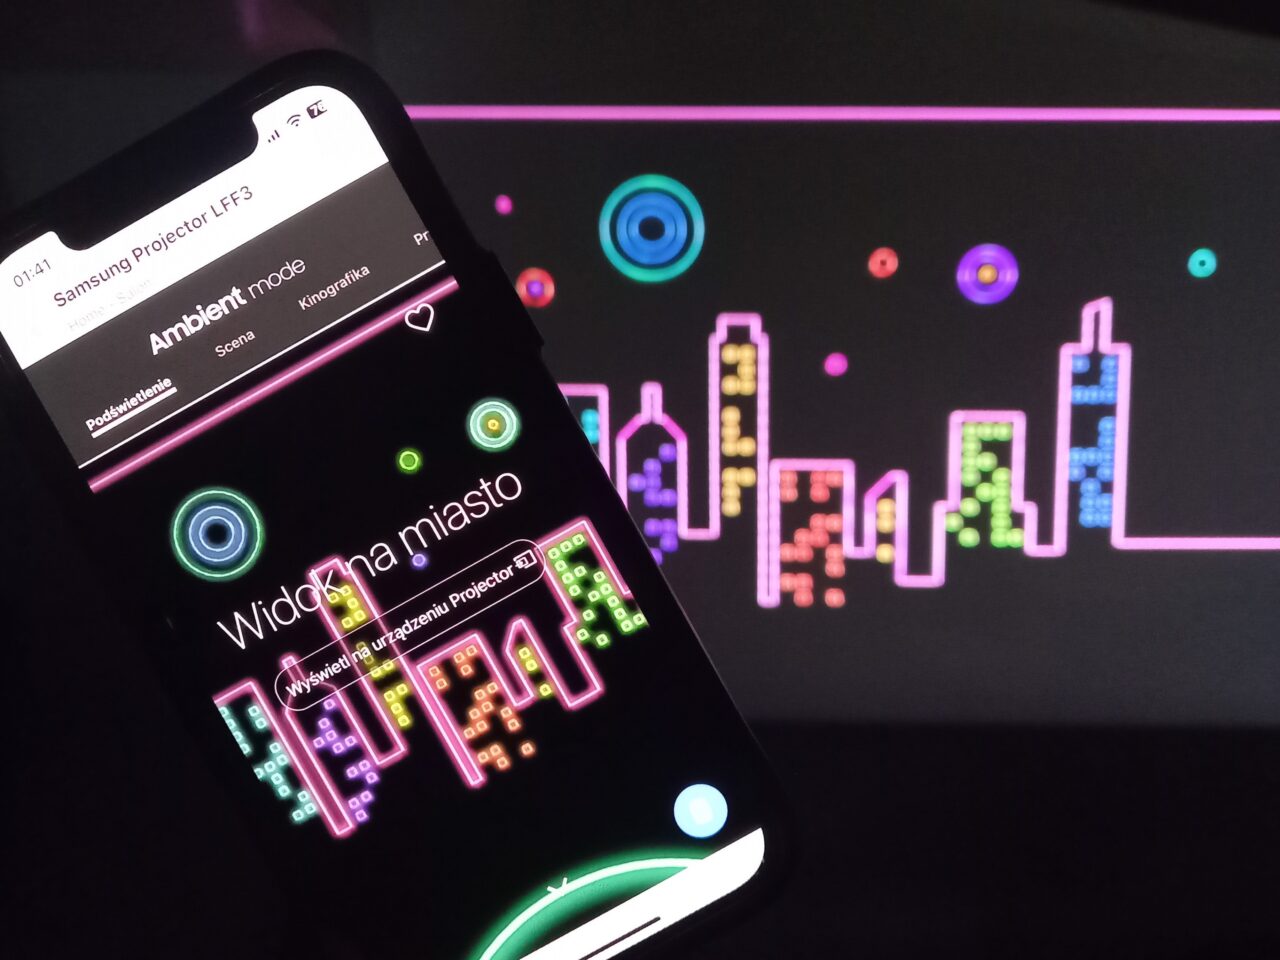 Ekran smartfona wyświetlający opcje projektora z napisem "Ambient mode" i tłem w postaci kolorowej grafiki miasta wyświetlanej przez projektor.